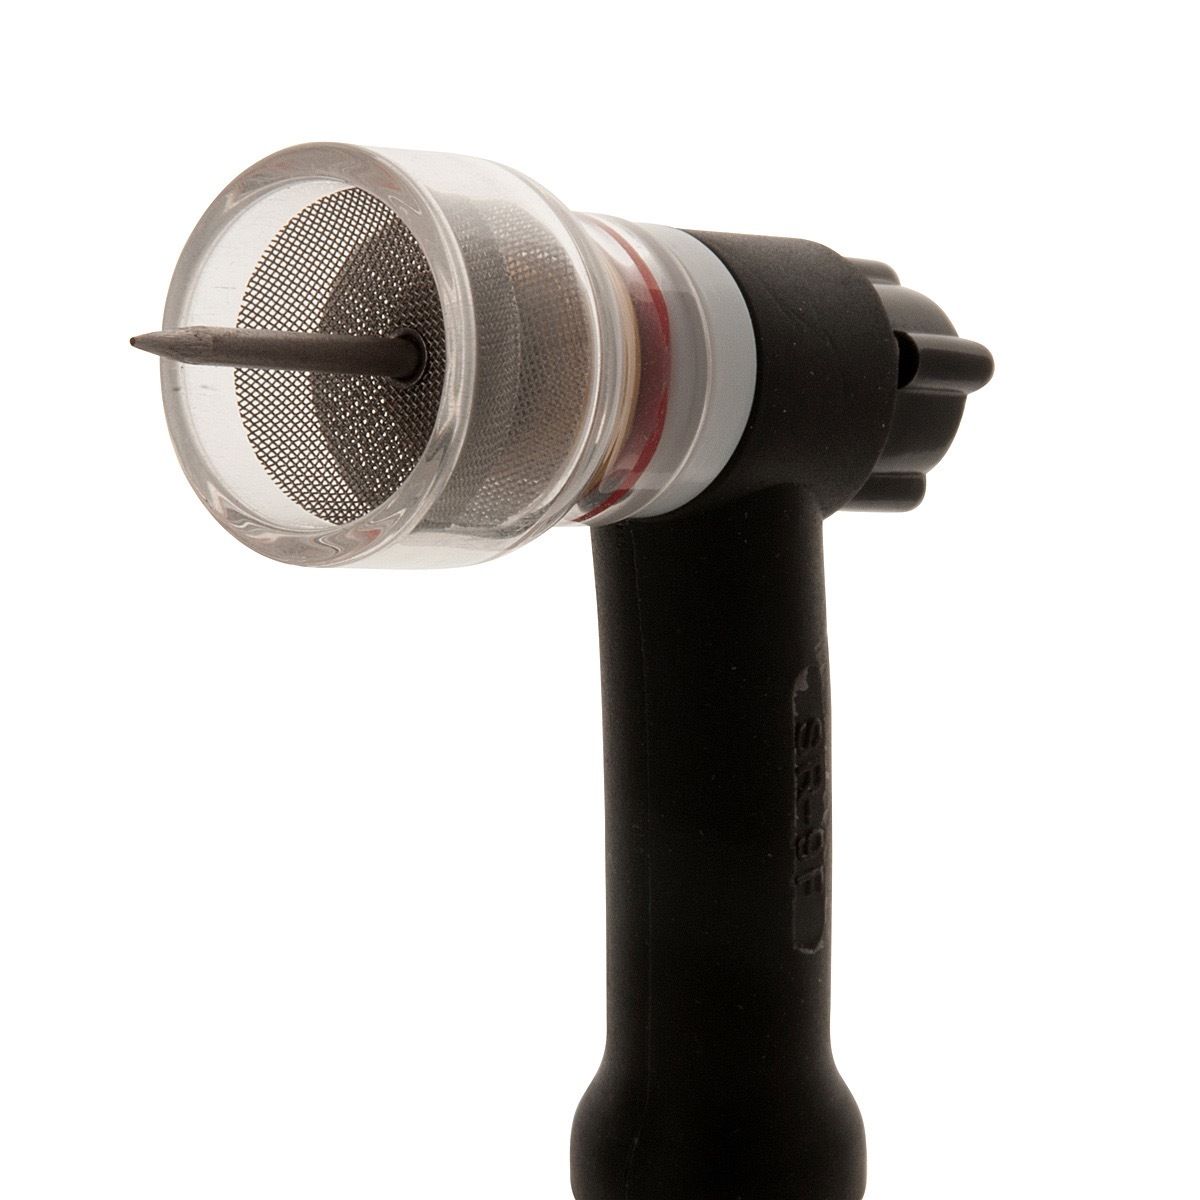 Mayitr pyrex tig svejsningskopsæt til tig fakler wp -9 & wp -17 gas linse 1.6mm og 2.4mm #12 størrelse kop med rustfrit stål filtre